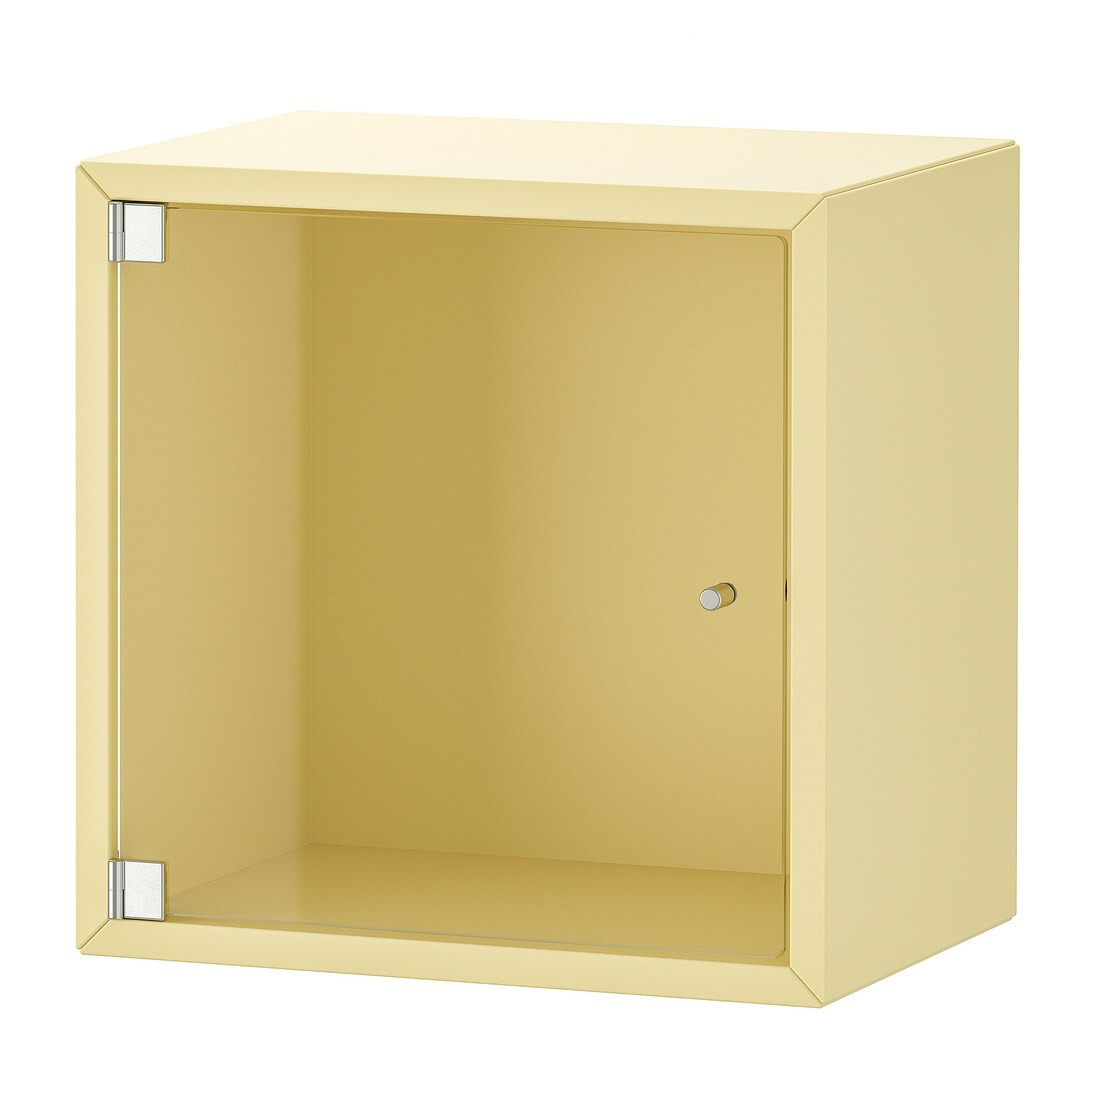 EKET Навесной шкаф со стеклянной дверью, бледно-желтый, 35x25x35 см